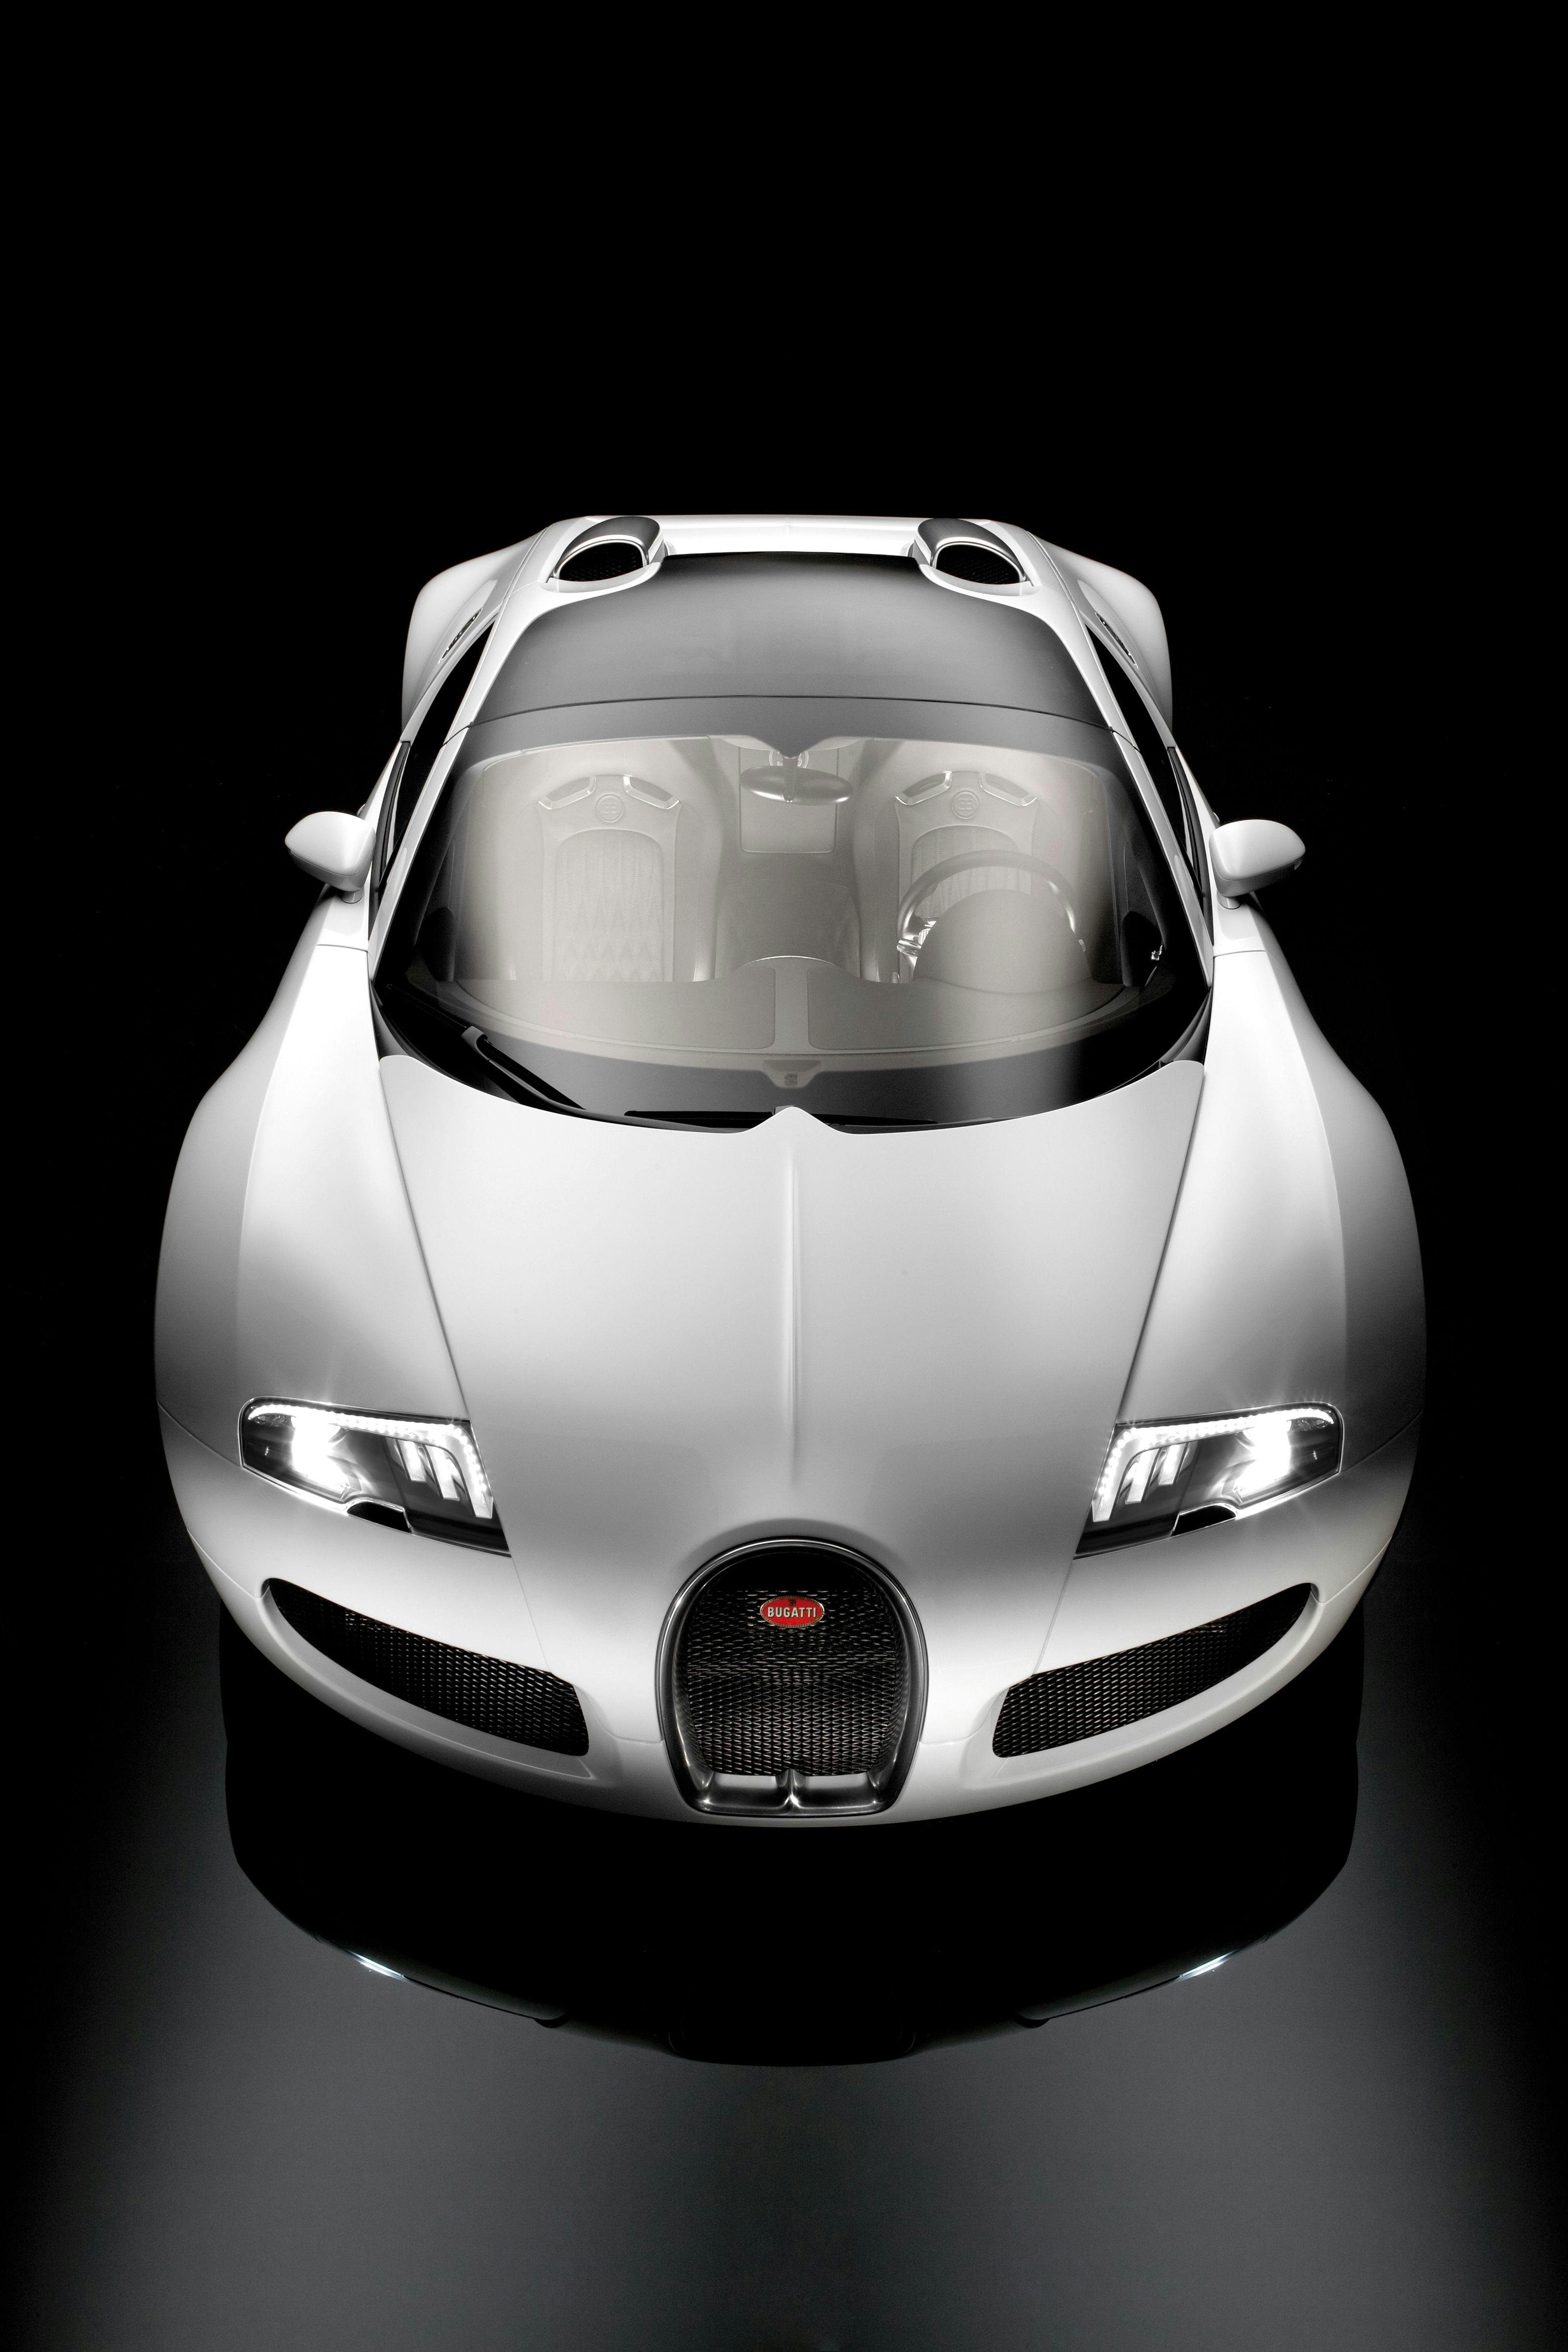 Bugatti Veyron 16.4 zeigt seine offene Seite